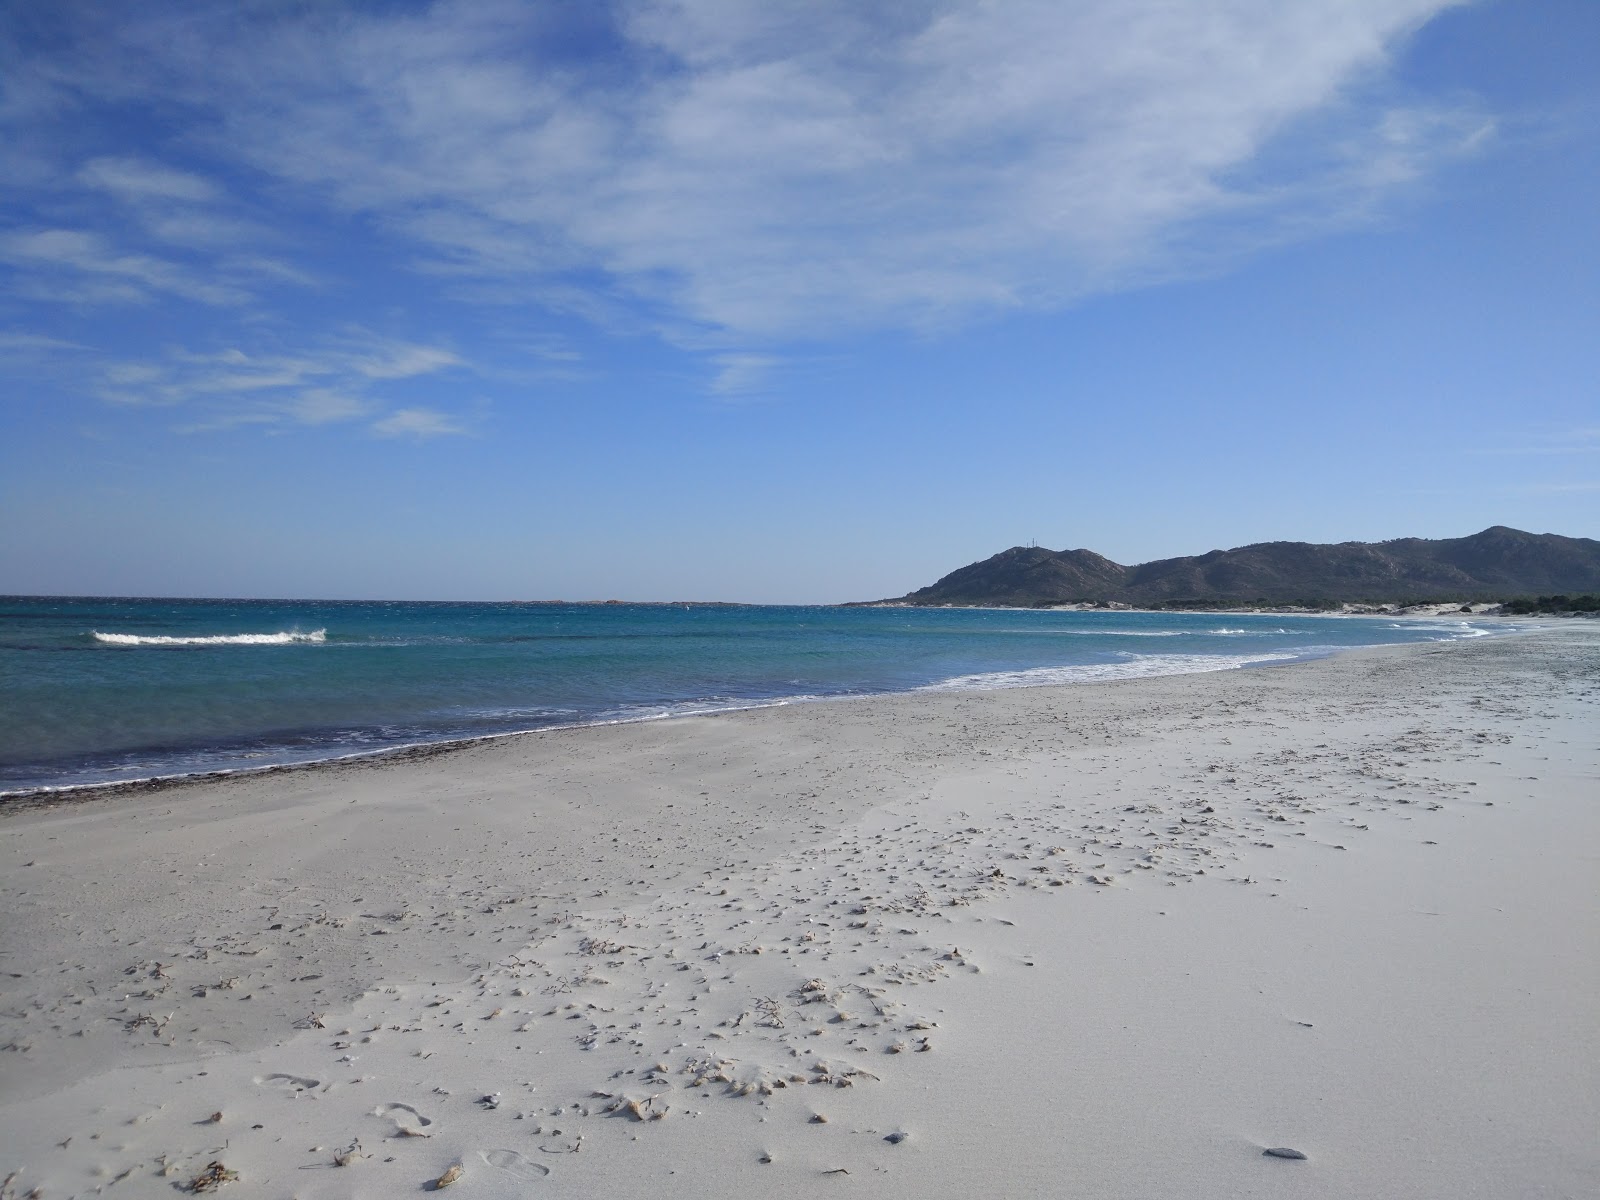 Capo Comino Plajı'in fotoğrafı geniş plaj ile birlikte